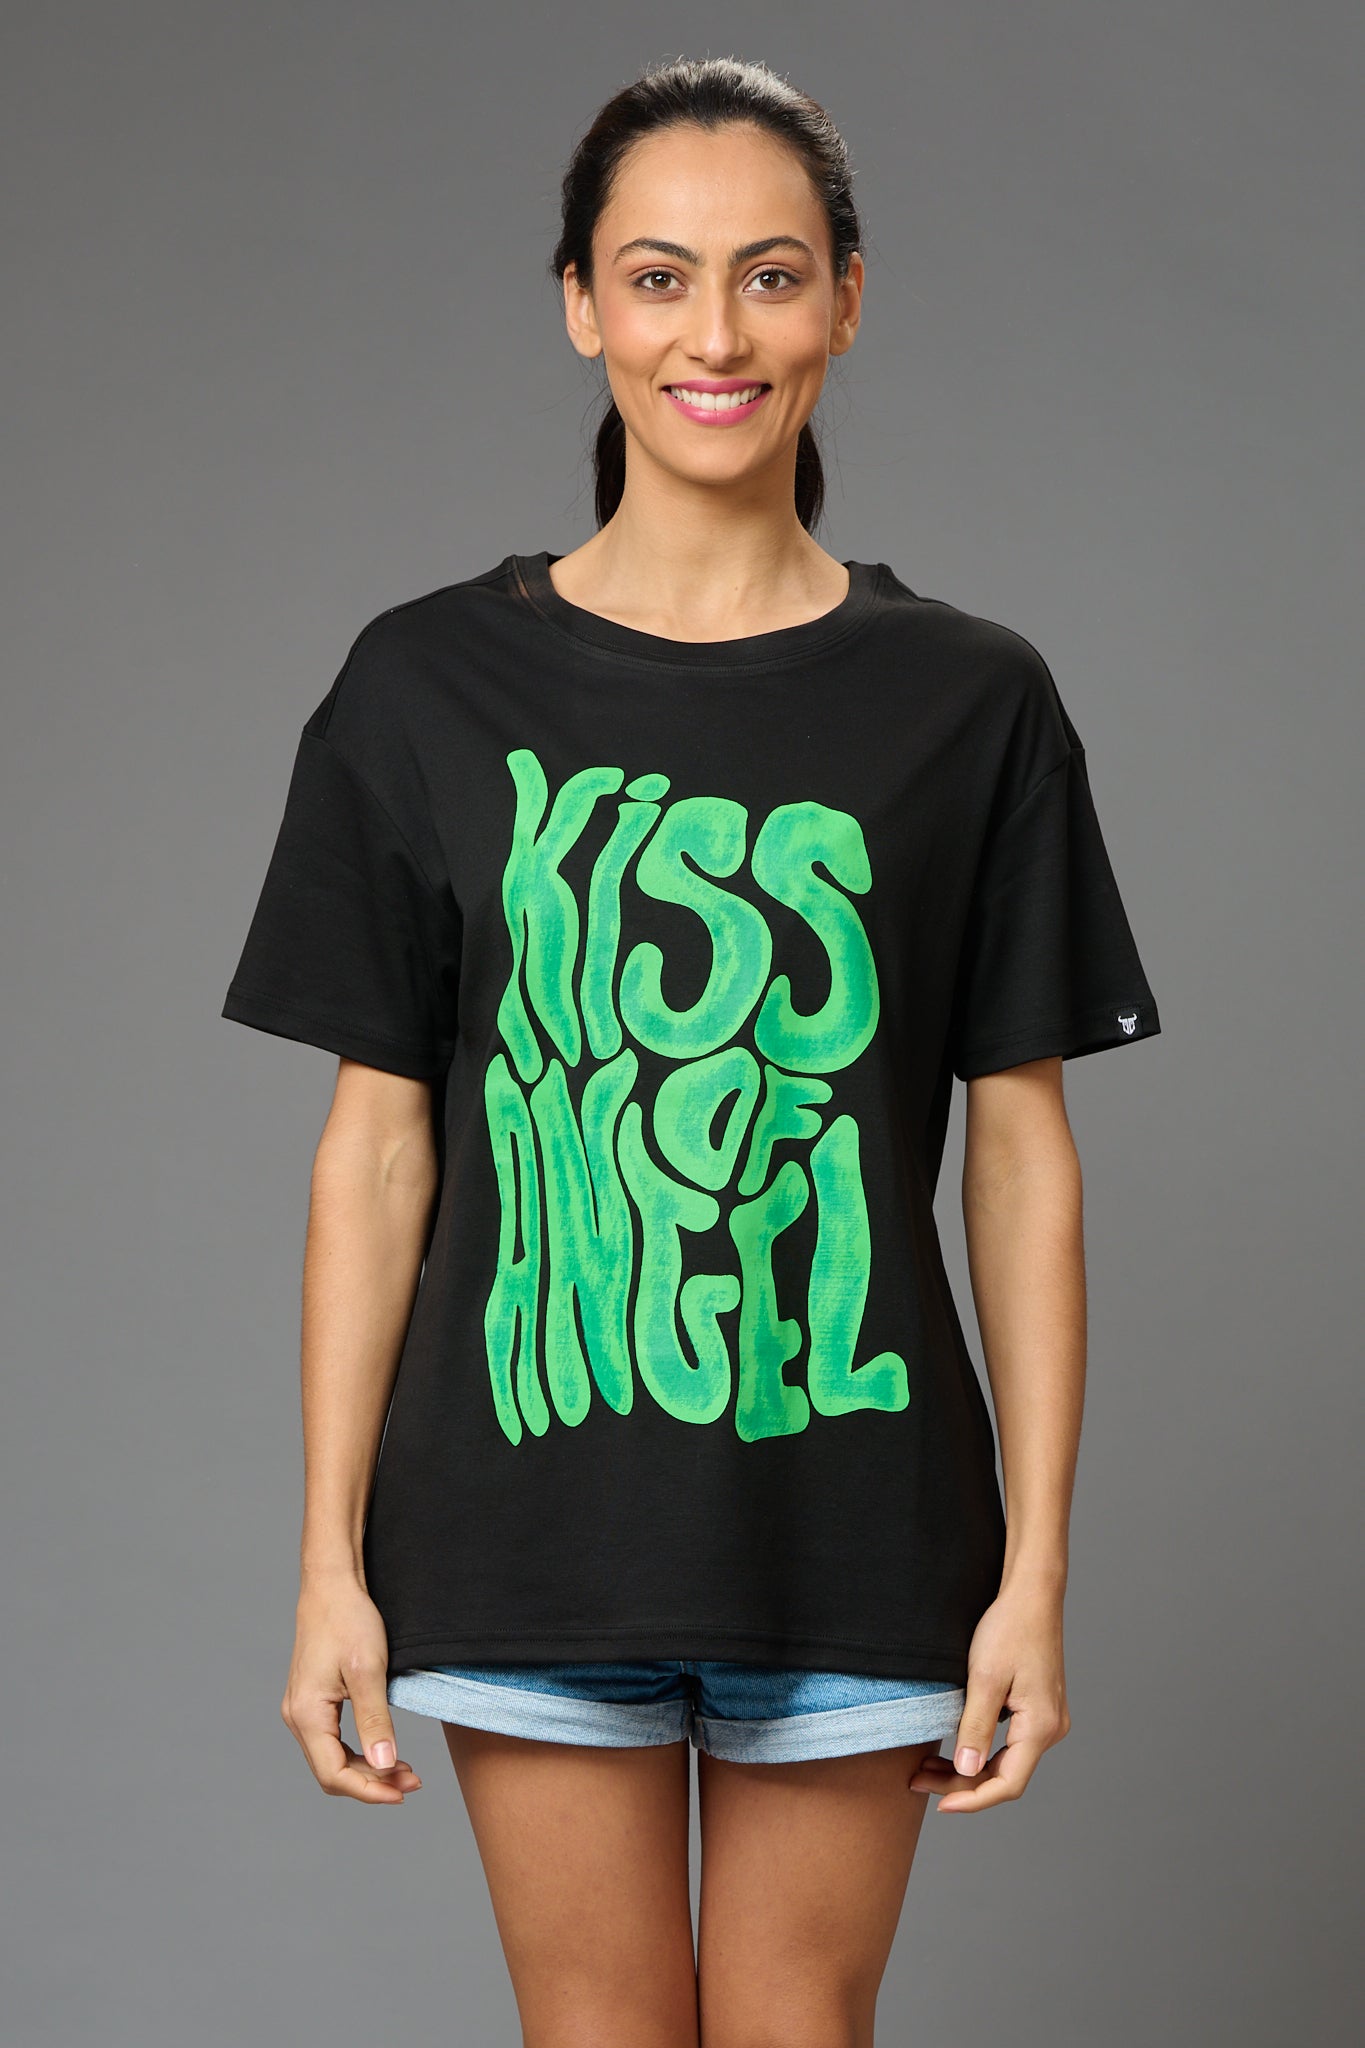 Kiss of Angel Printed Black Oversized T-Shirt for Women - Go Devil